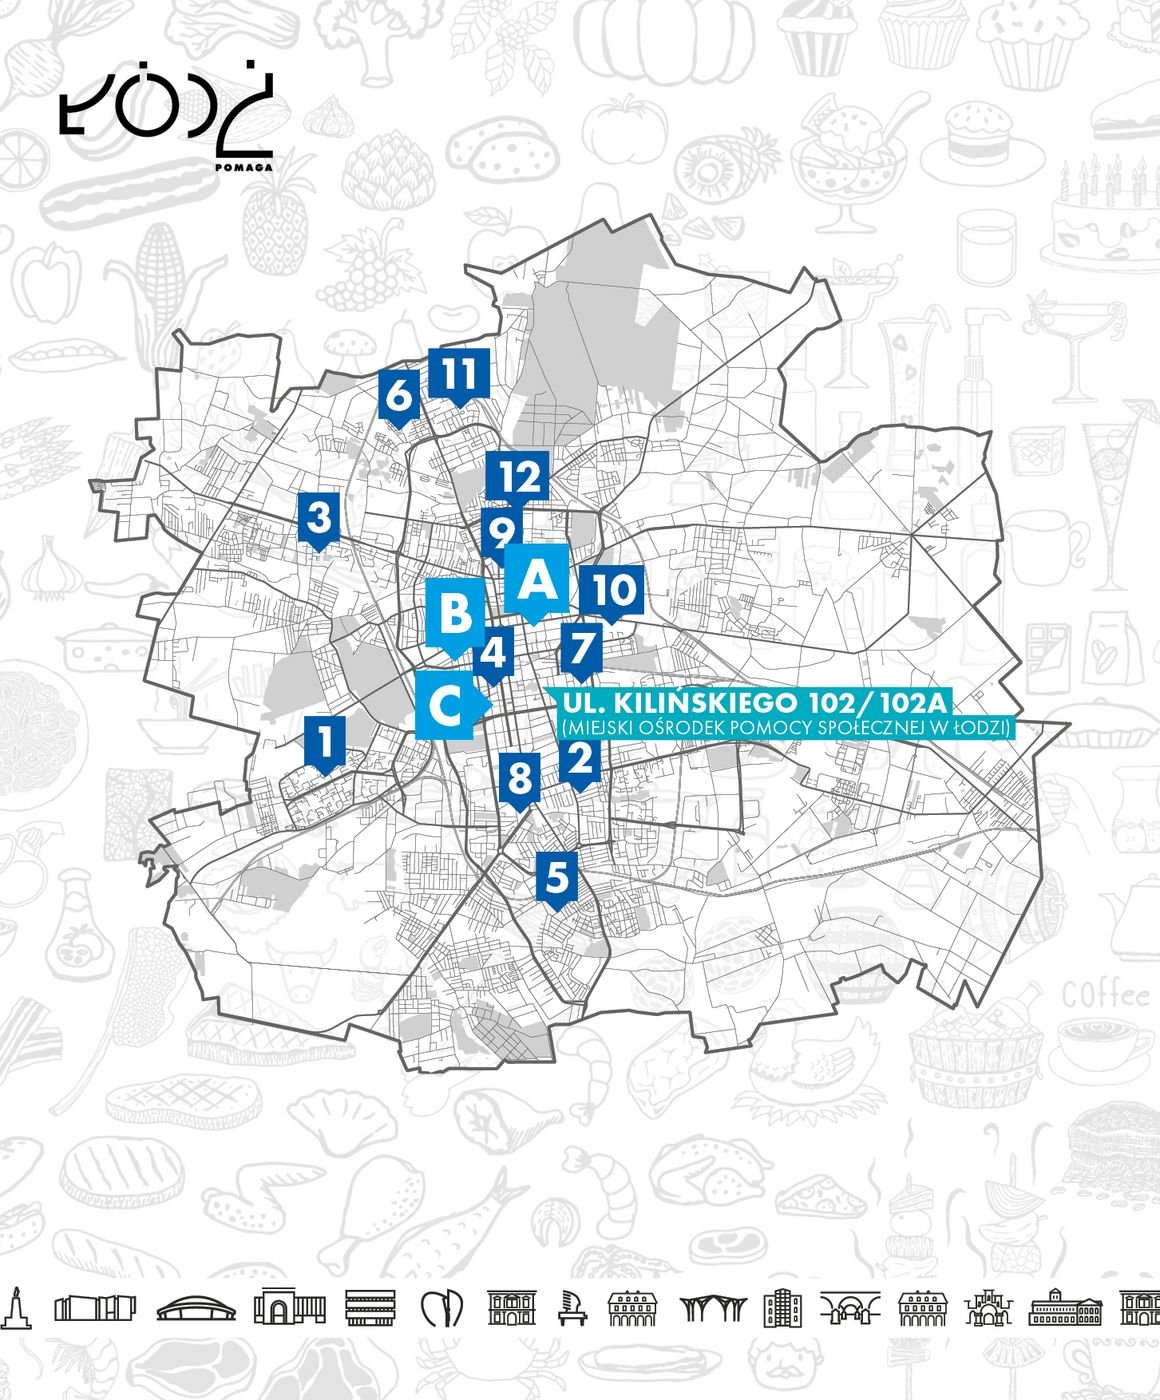  , Lodówki społeczne i jadło dzielnie w Łodzi - mapa wraz z adresami. Wszystkie adresy dostępnych punktów dzielenia się jedzeniem znajdziesz w tekście poniżej.